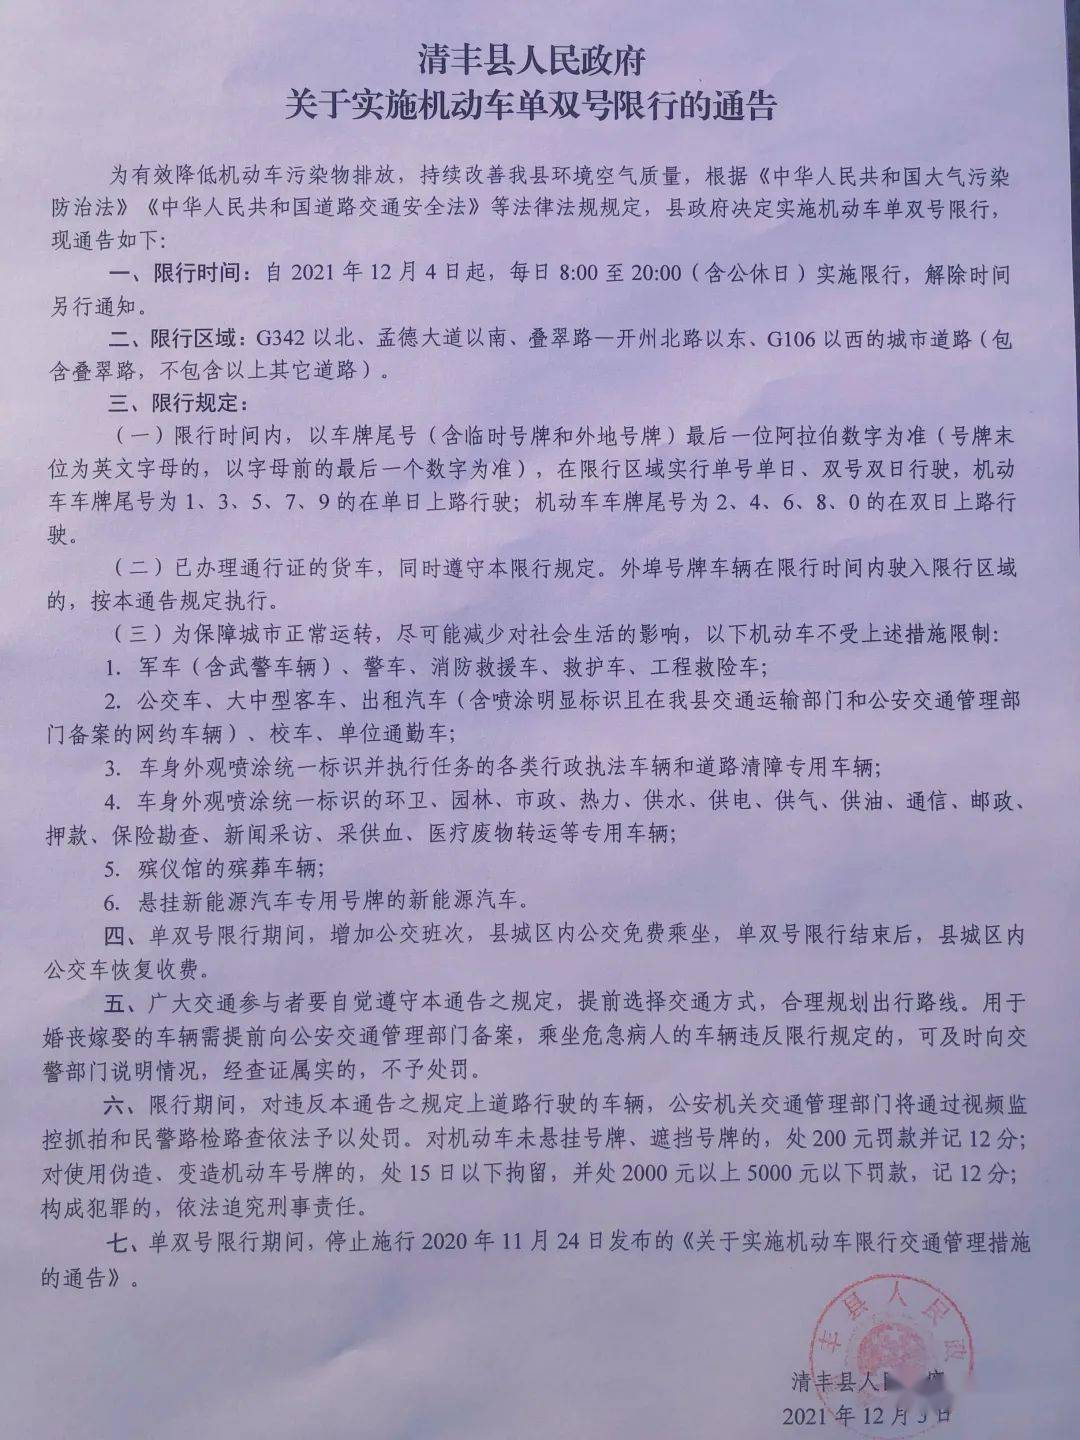 清丰县人民政府关于实施单双号限行的通告